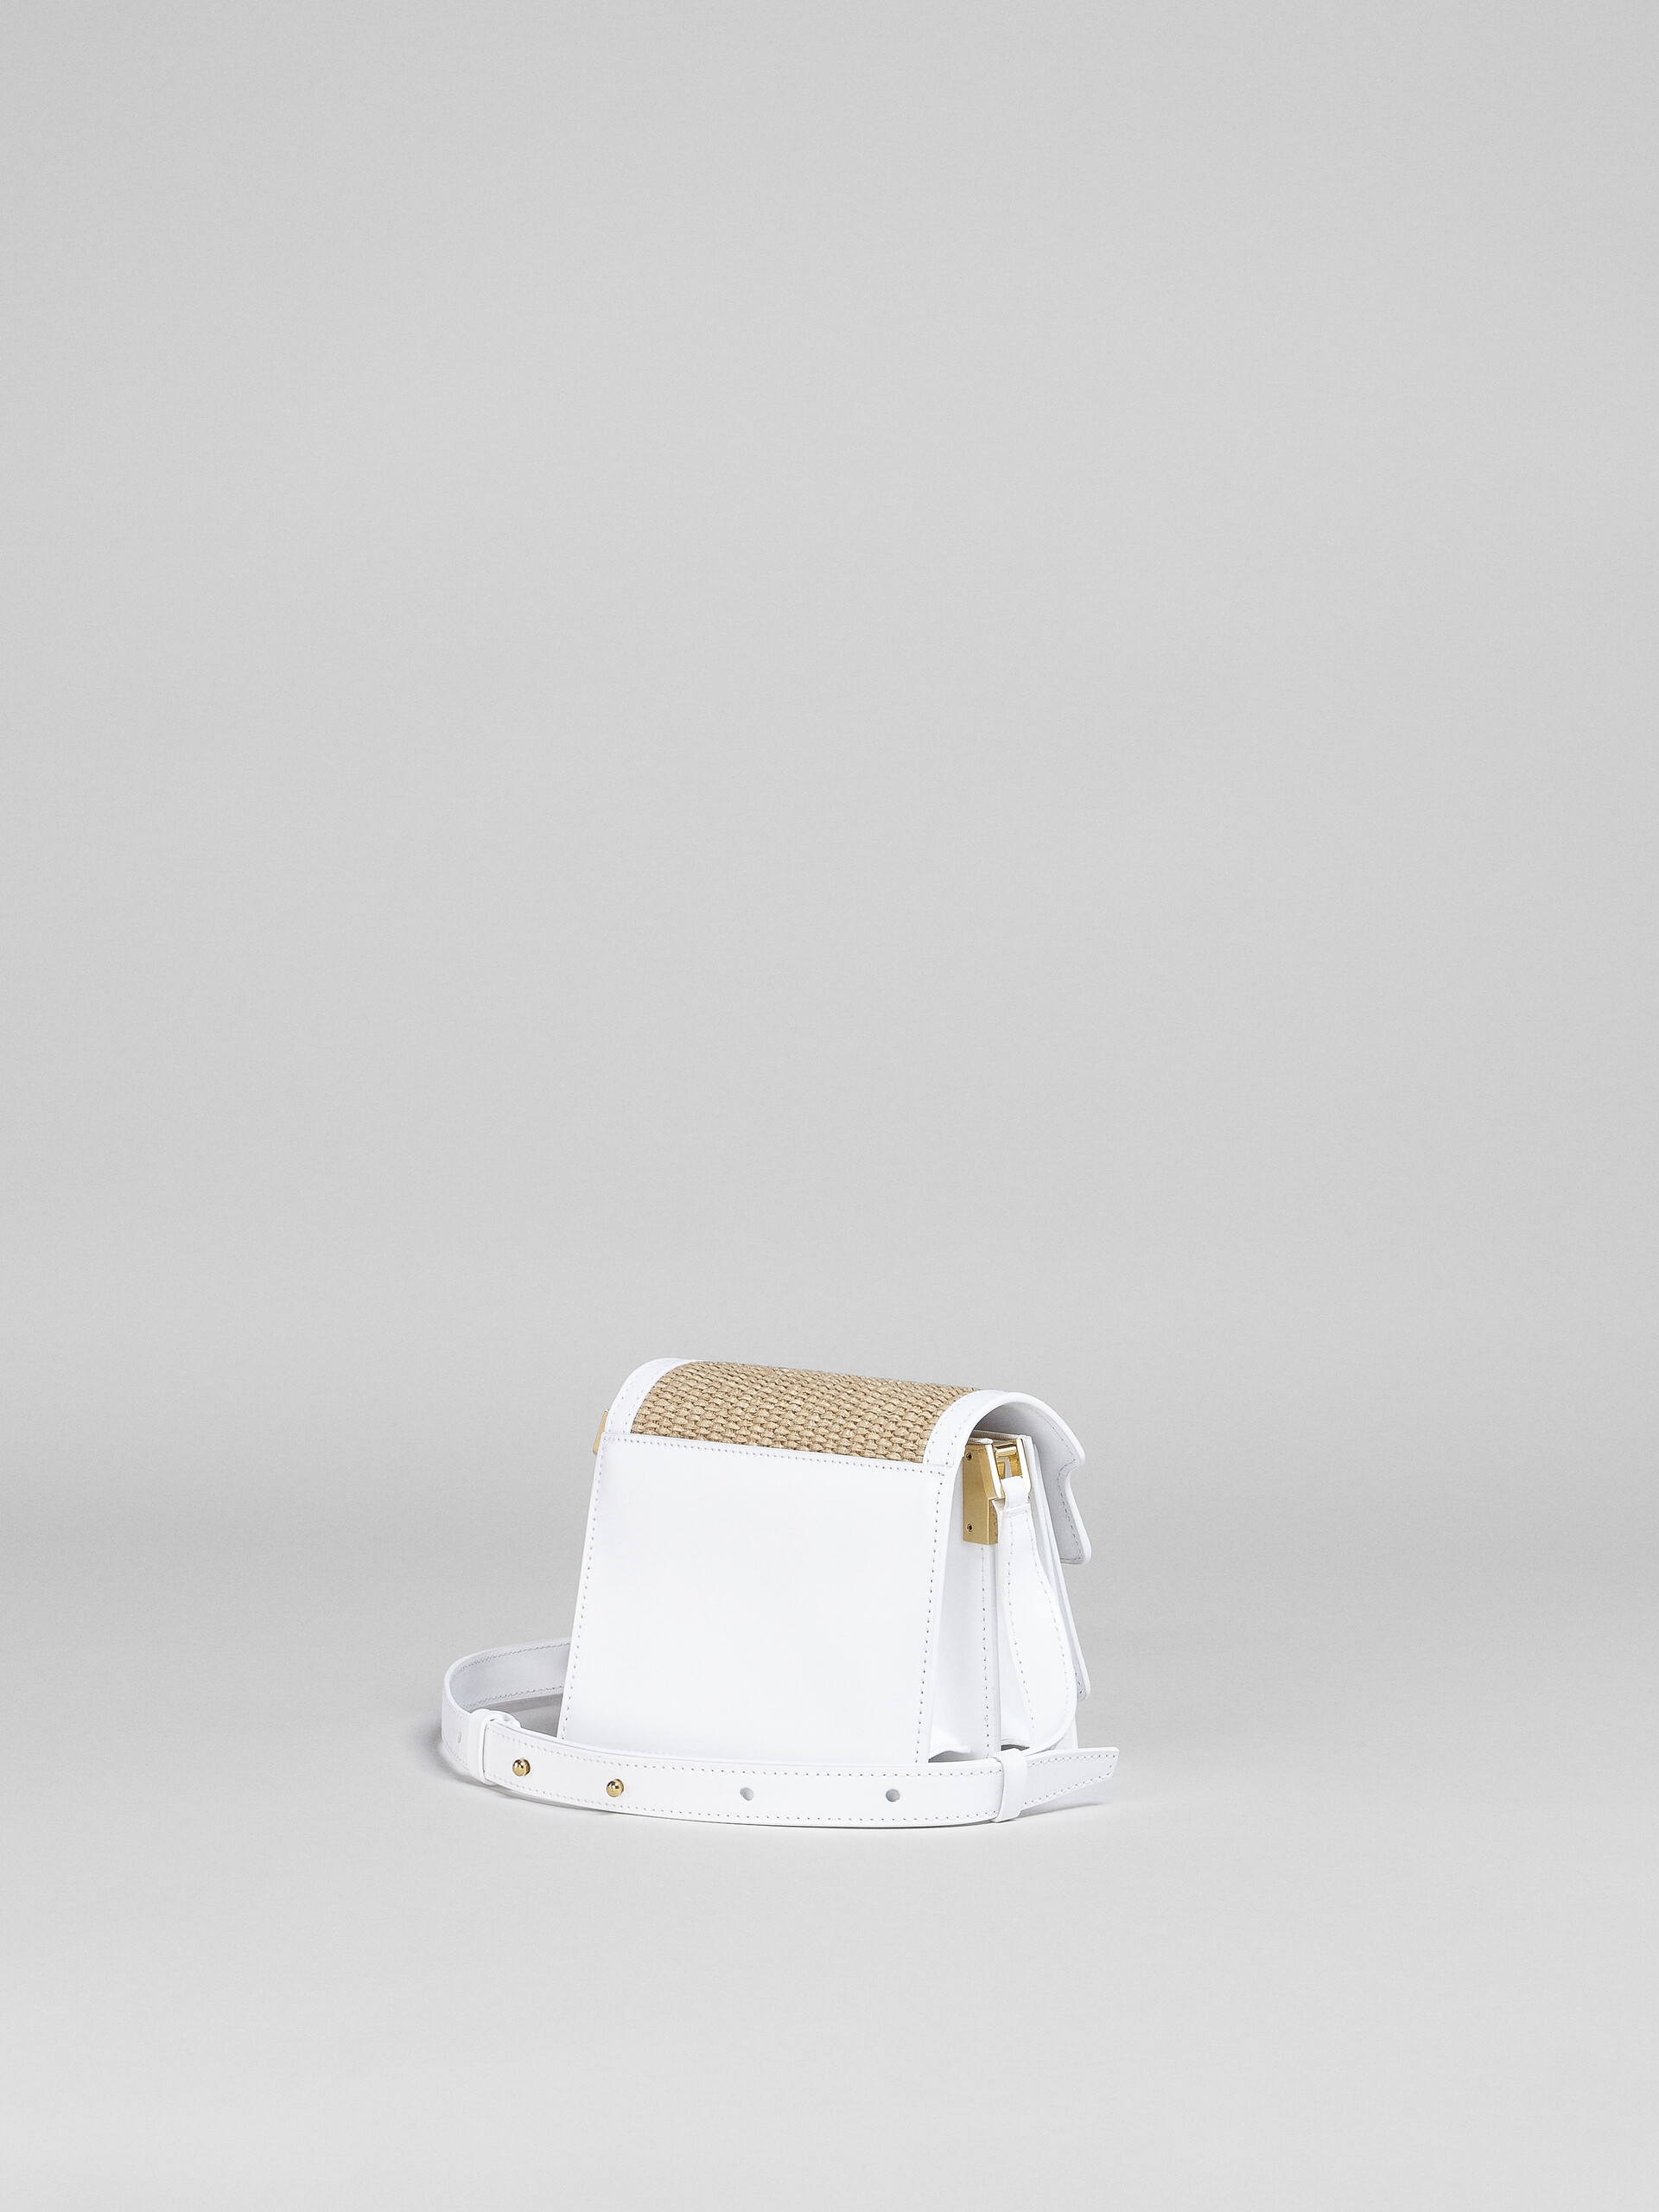 TRUNK SOFT bag mini in pelle bianca e rafia - Borse a spalla - Image 2